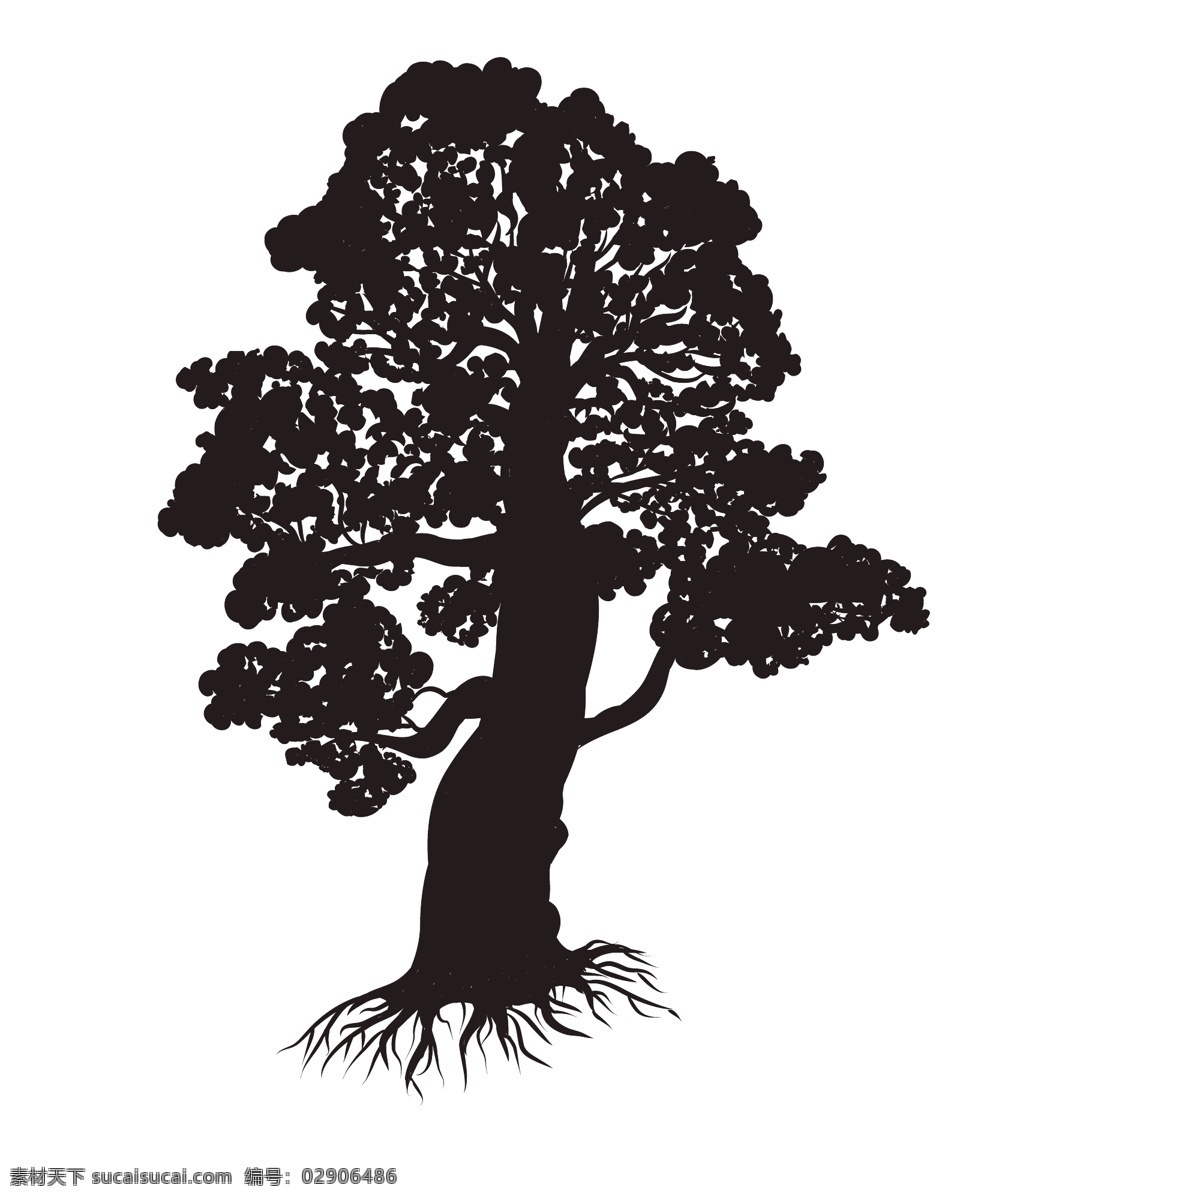 植物树木剪影 黑色 创意 装饰图案 植物 树木 树枝 树干 剪影 涂鸦 图案 简约 绘画 树叶 树苗 素描 椰子树 松树 剪纸 波西 米亚 风格 花纹